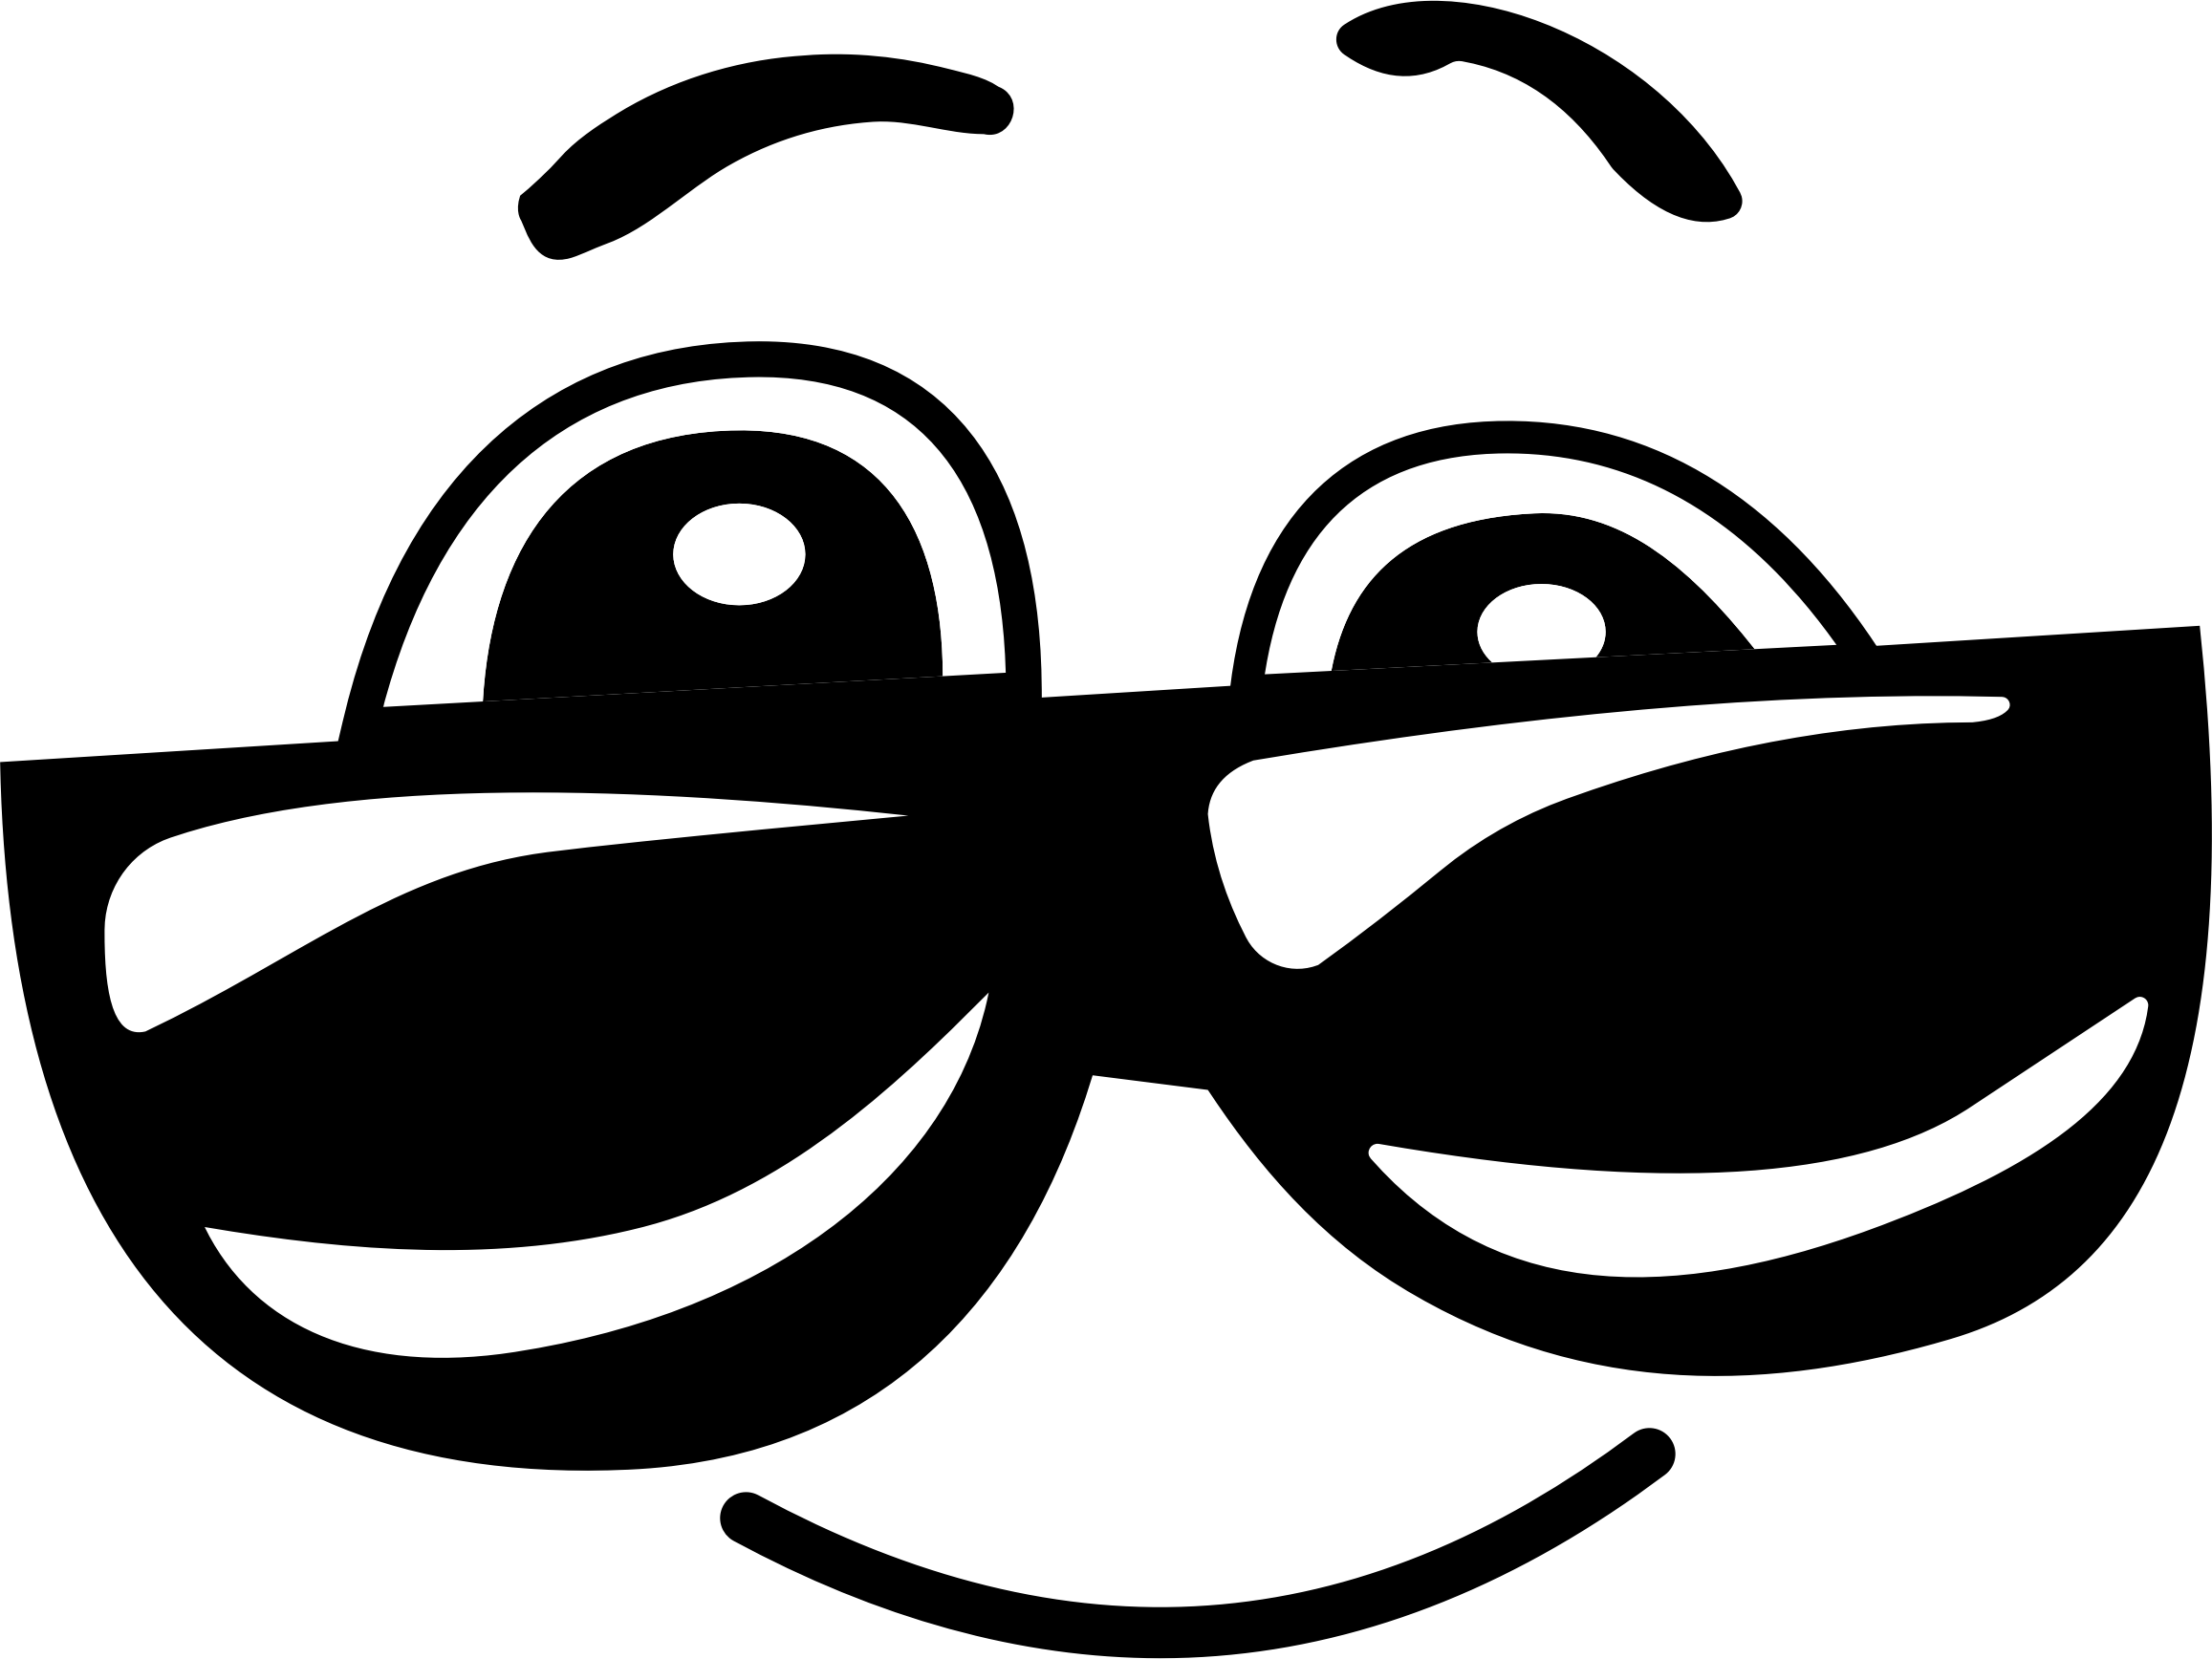 Emoticon Smiley Sunglasses Emoji Free HQ Image Clipart